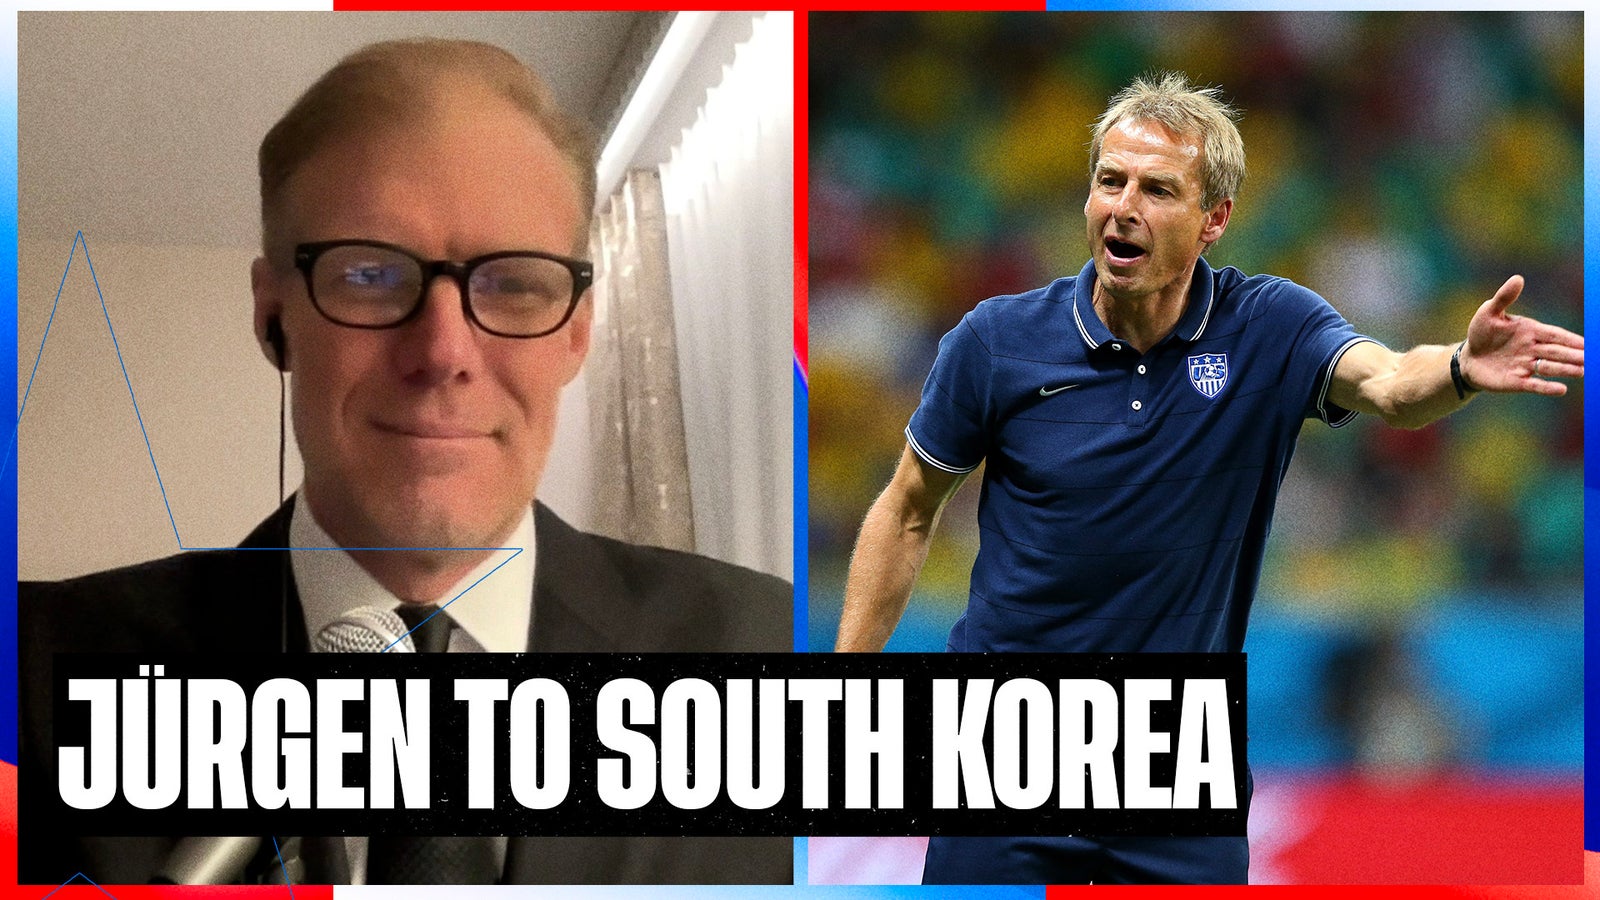 Will former USMNT manager Jürgen Klinsmann be a GOOD fit for South Korea?